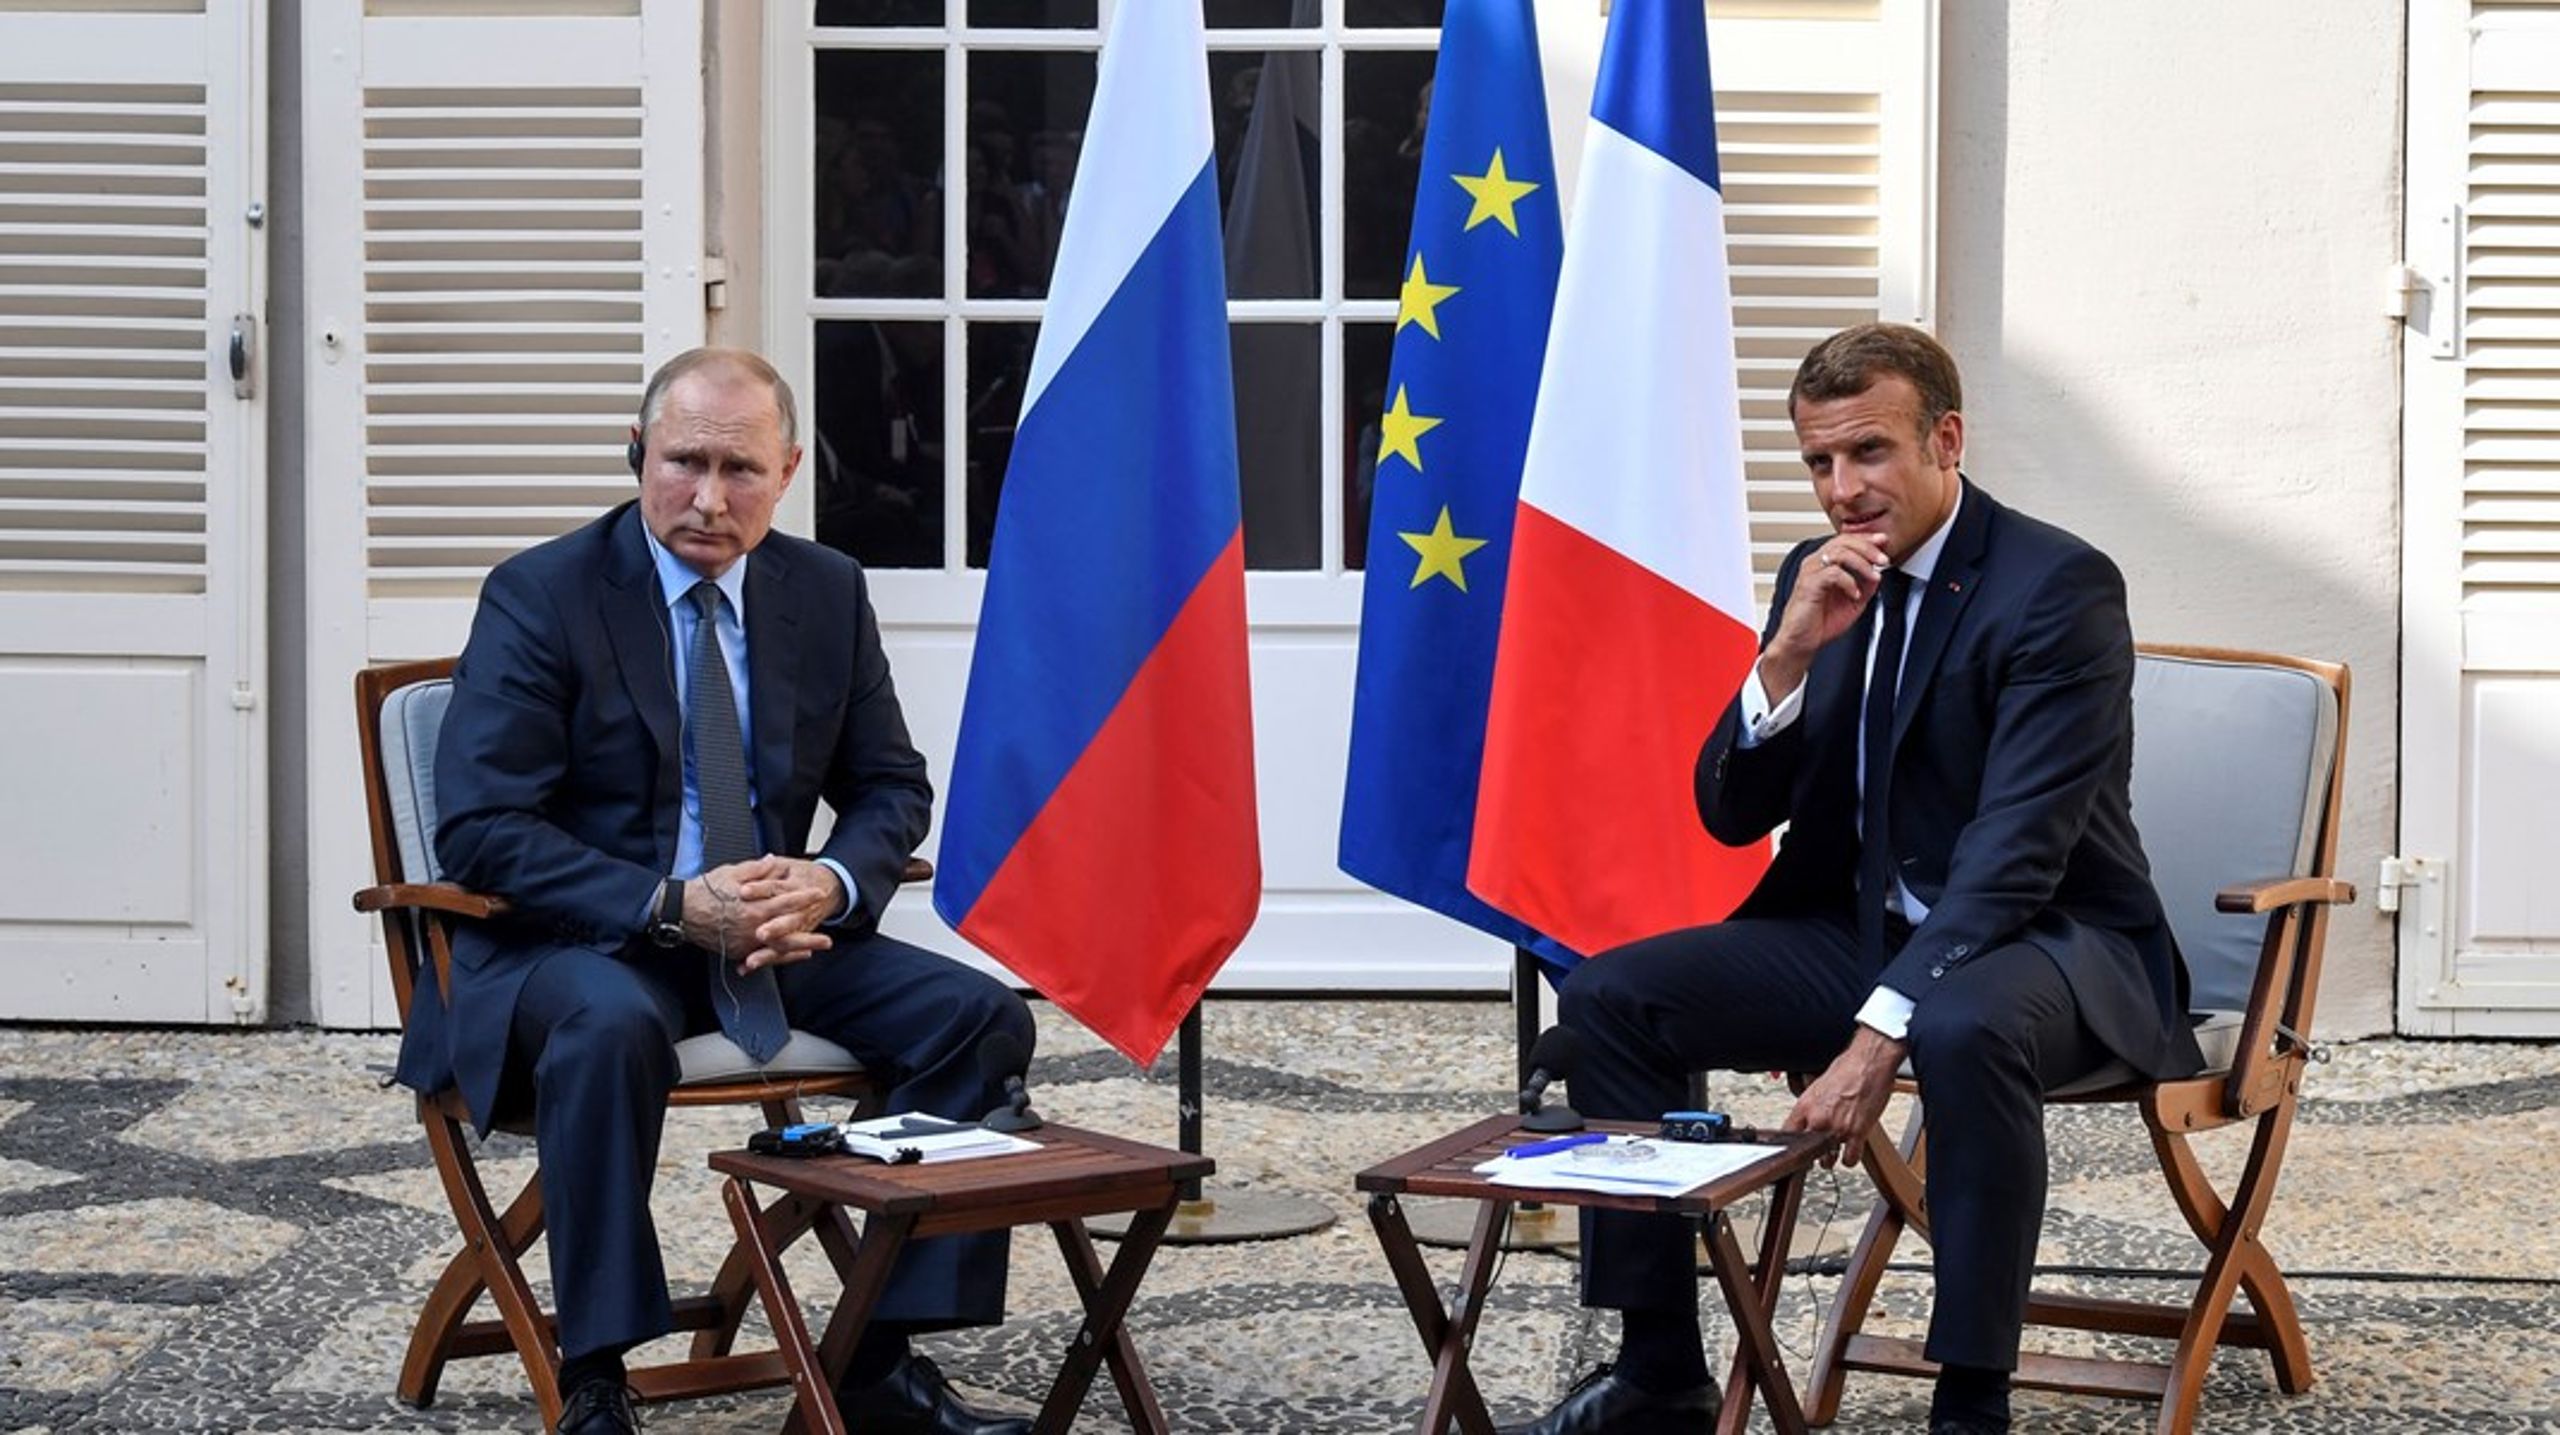 Siden krigen i Ukraine brød ud,&nbsp;har præsident Macron både insisteret på, at Rusland ikke må ydmyges, og at Kreml har legitime behov for sikkerhedsgarantier, skriver&nbsp;Michael Ehrenreich.<b></b><br>